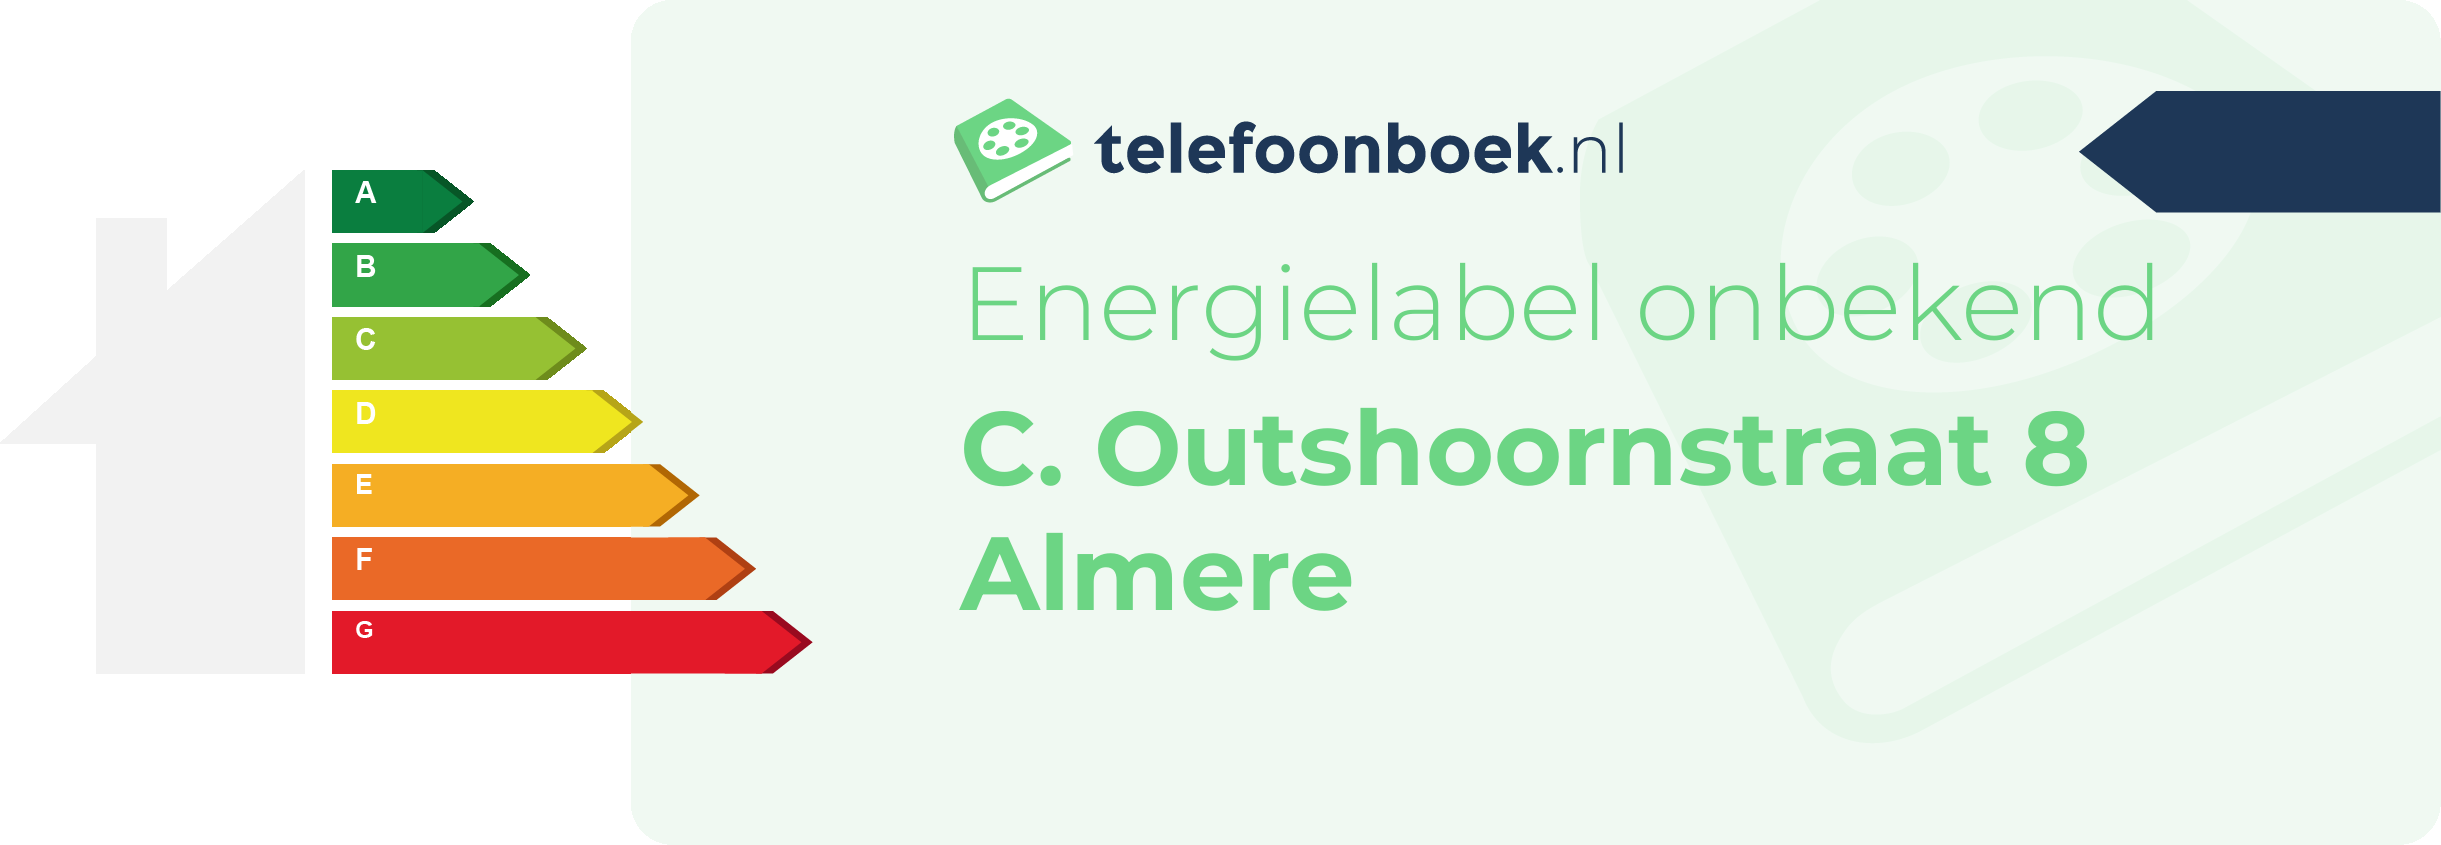 Energielabel C. Outshoornstraat 8 Almere